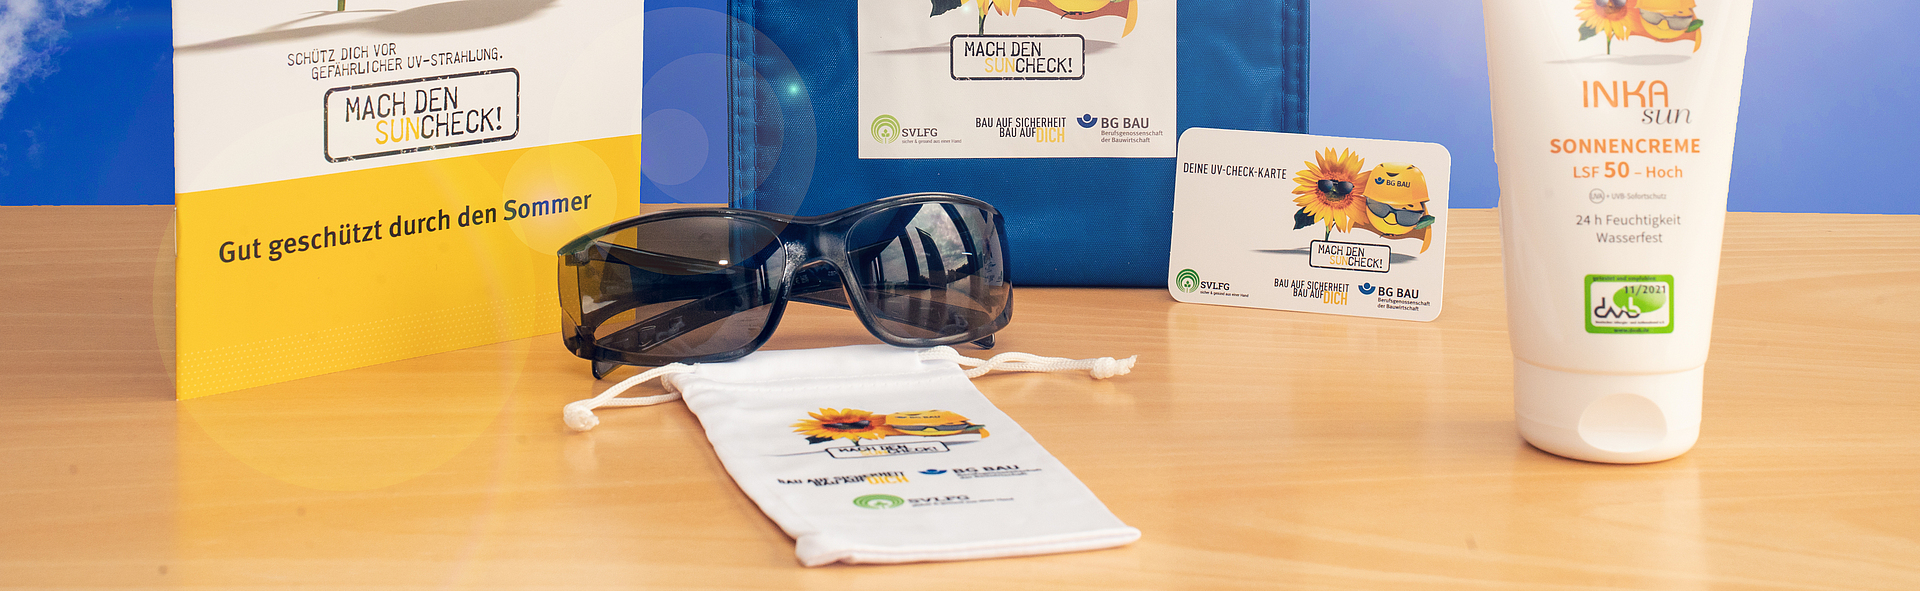 Zusammenstellung des UV-Schutz-Pakets: Sonnencreme, Sonnenbrille mit Beutel, UV-Check-Karte und Informationsmaterial zum UV-Schutz